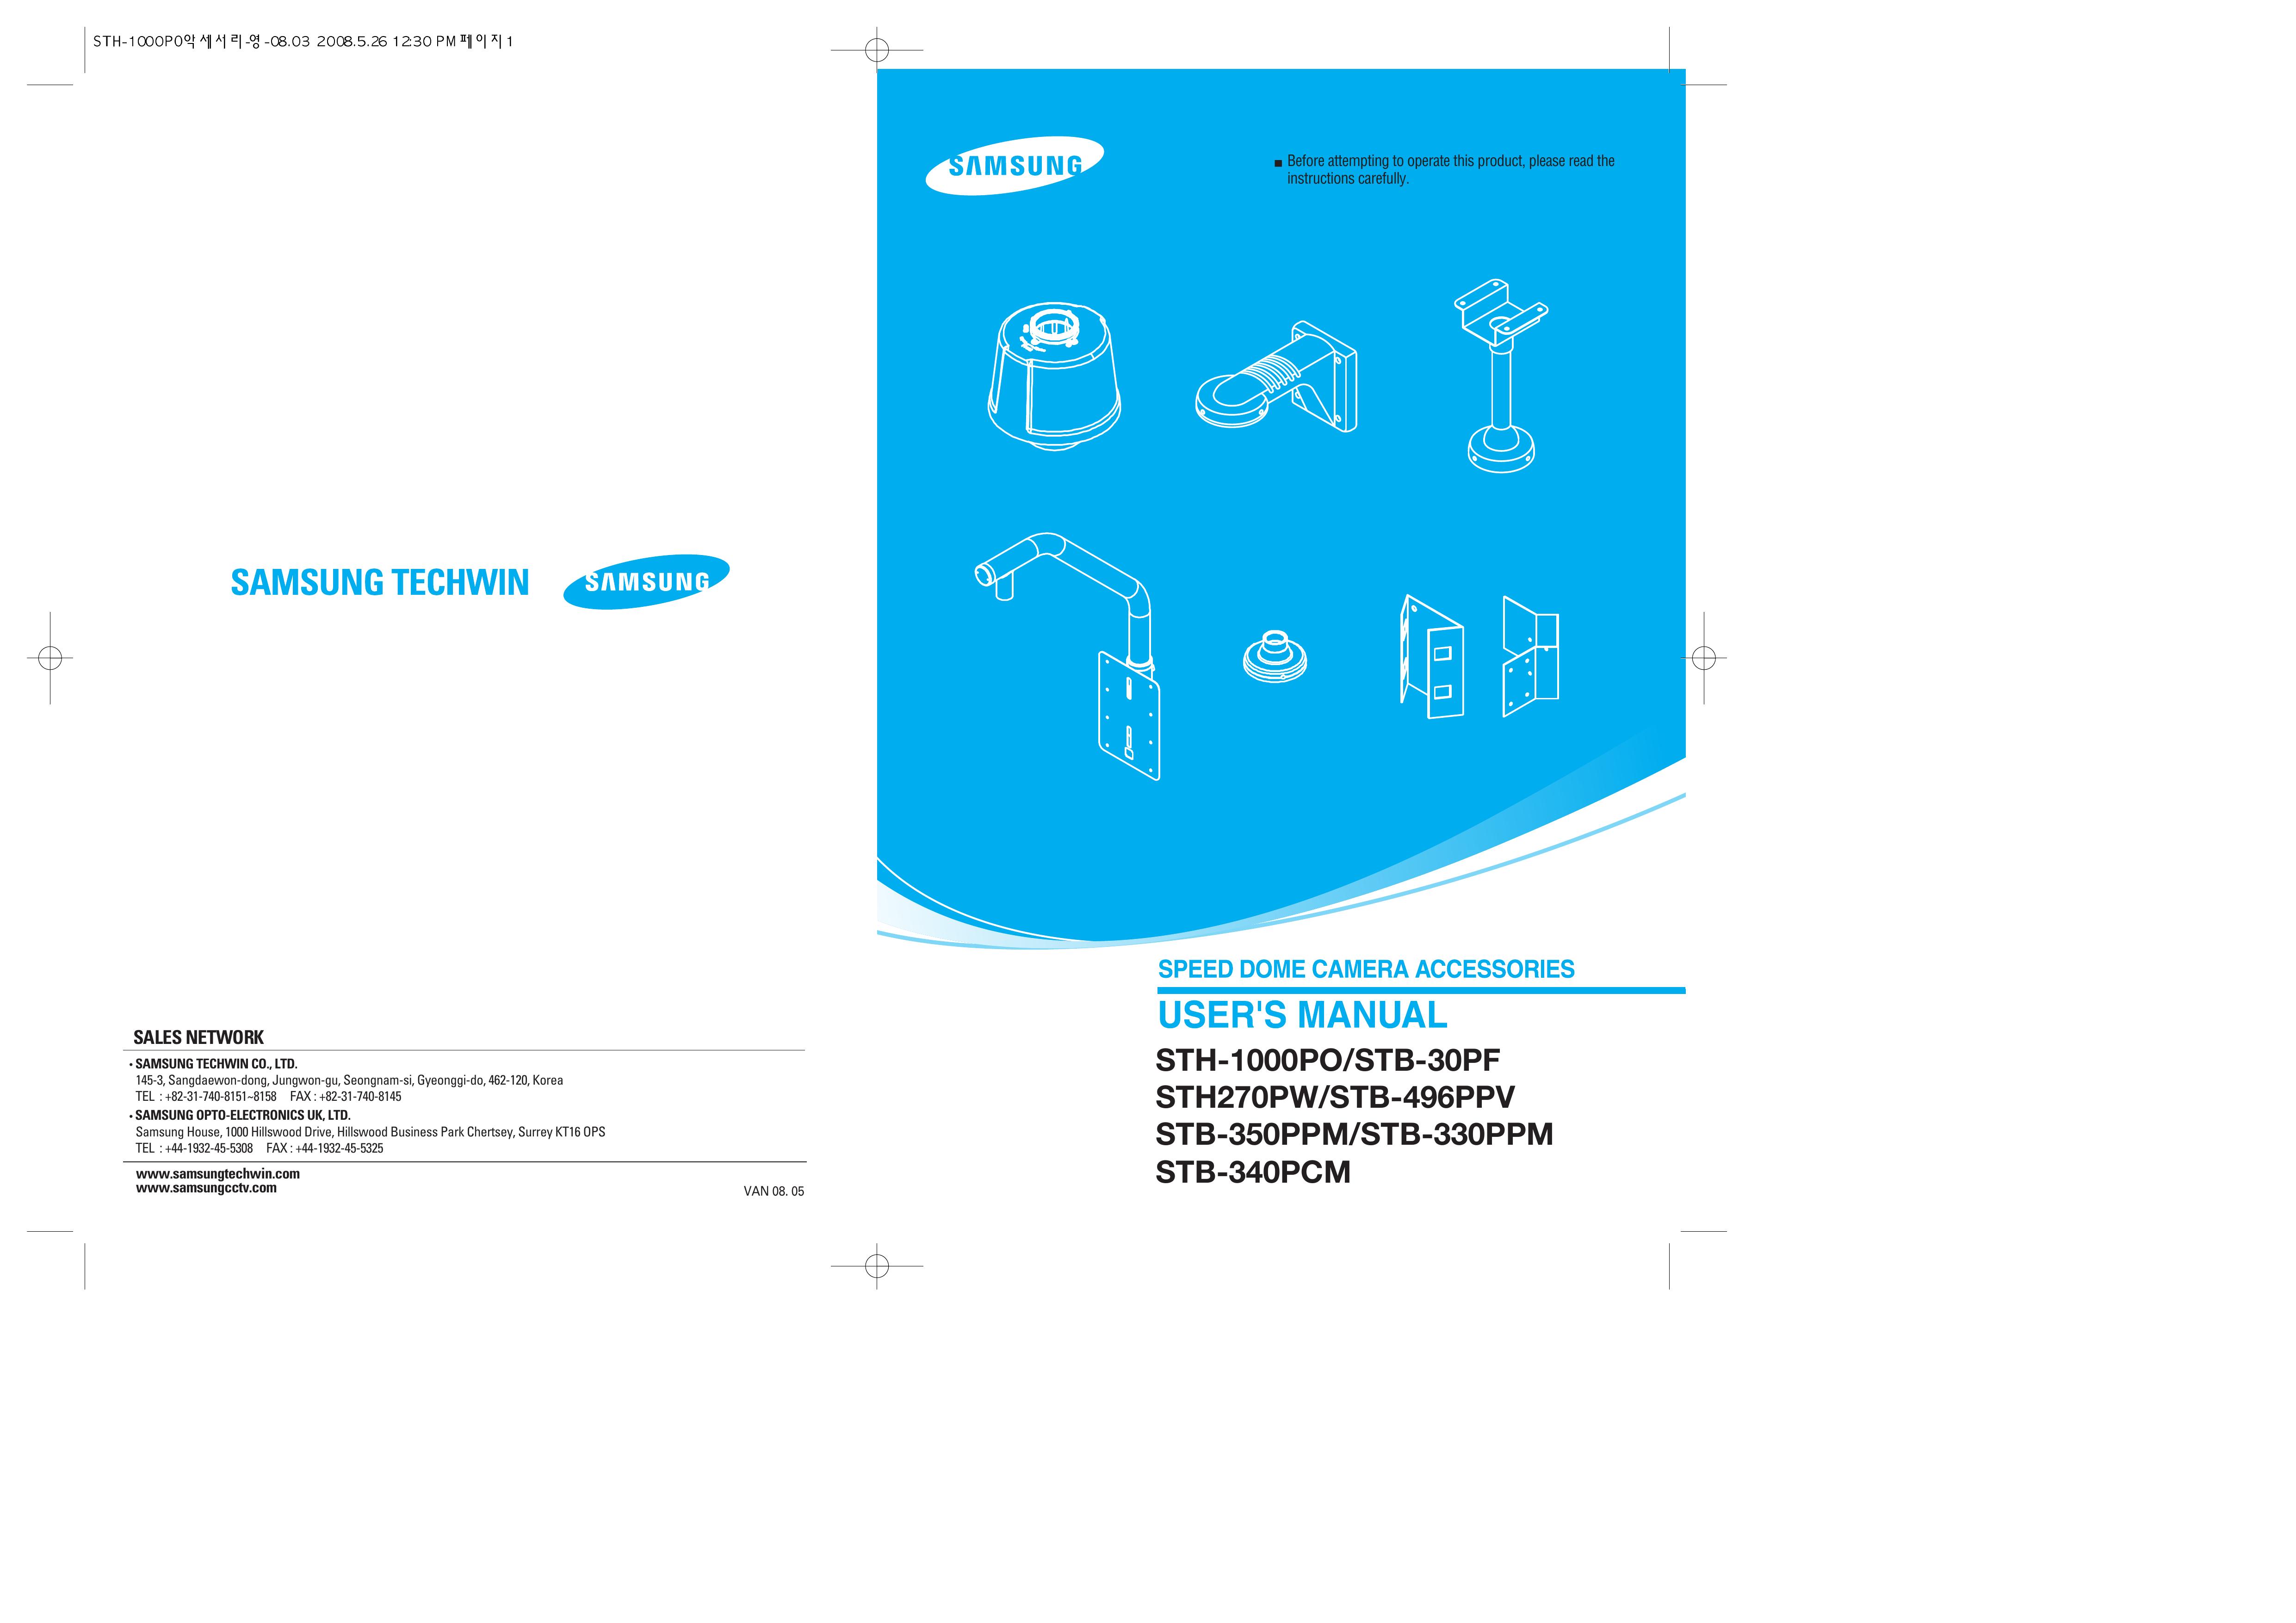 Samsung STH-1000PO Camera Accessories User Manual